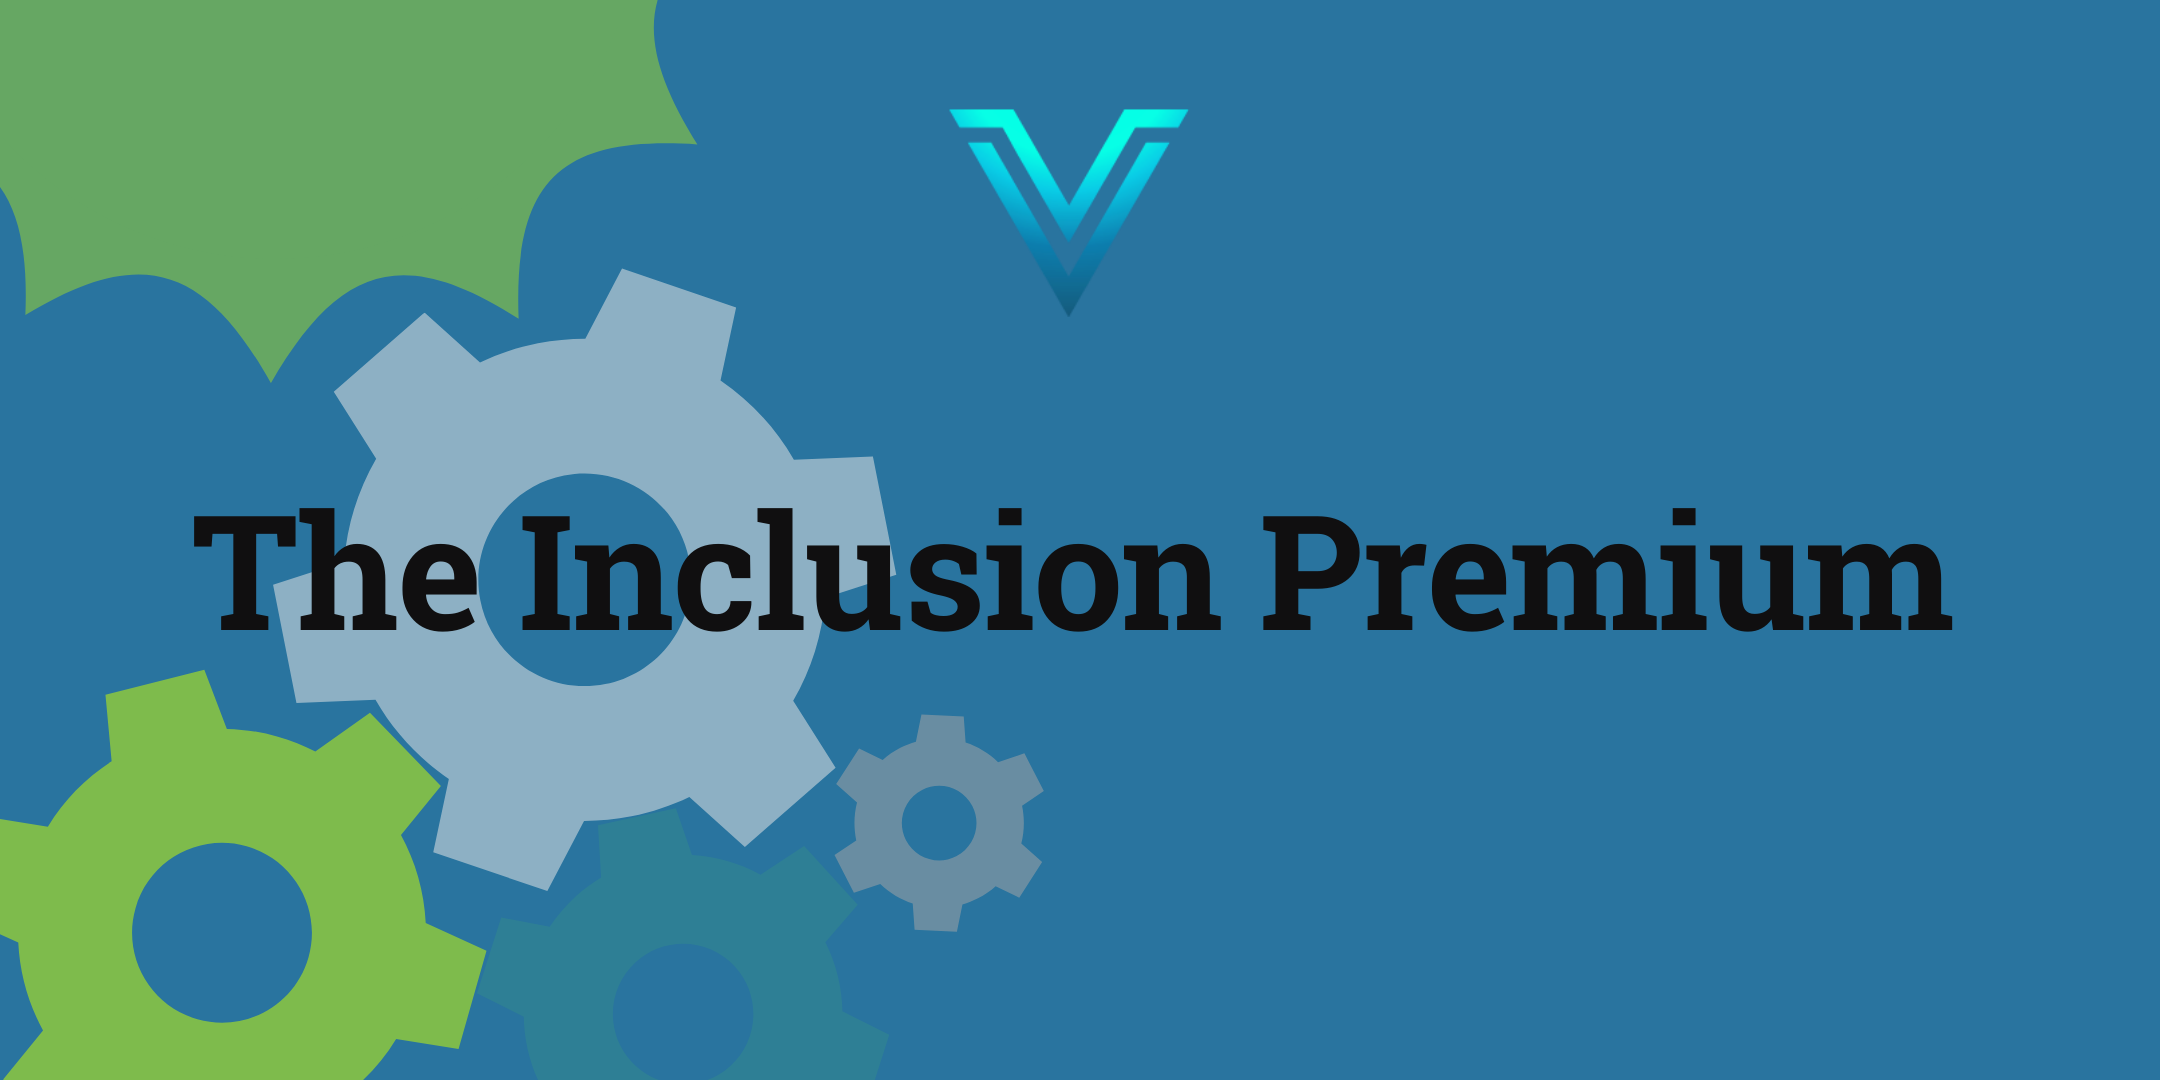 Our Inclusion Premium Investing Philosophy